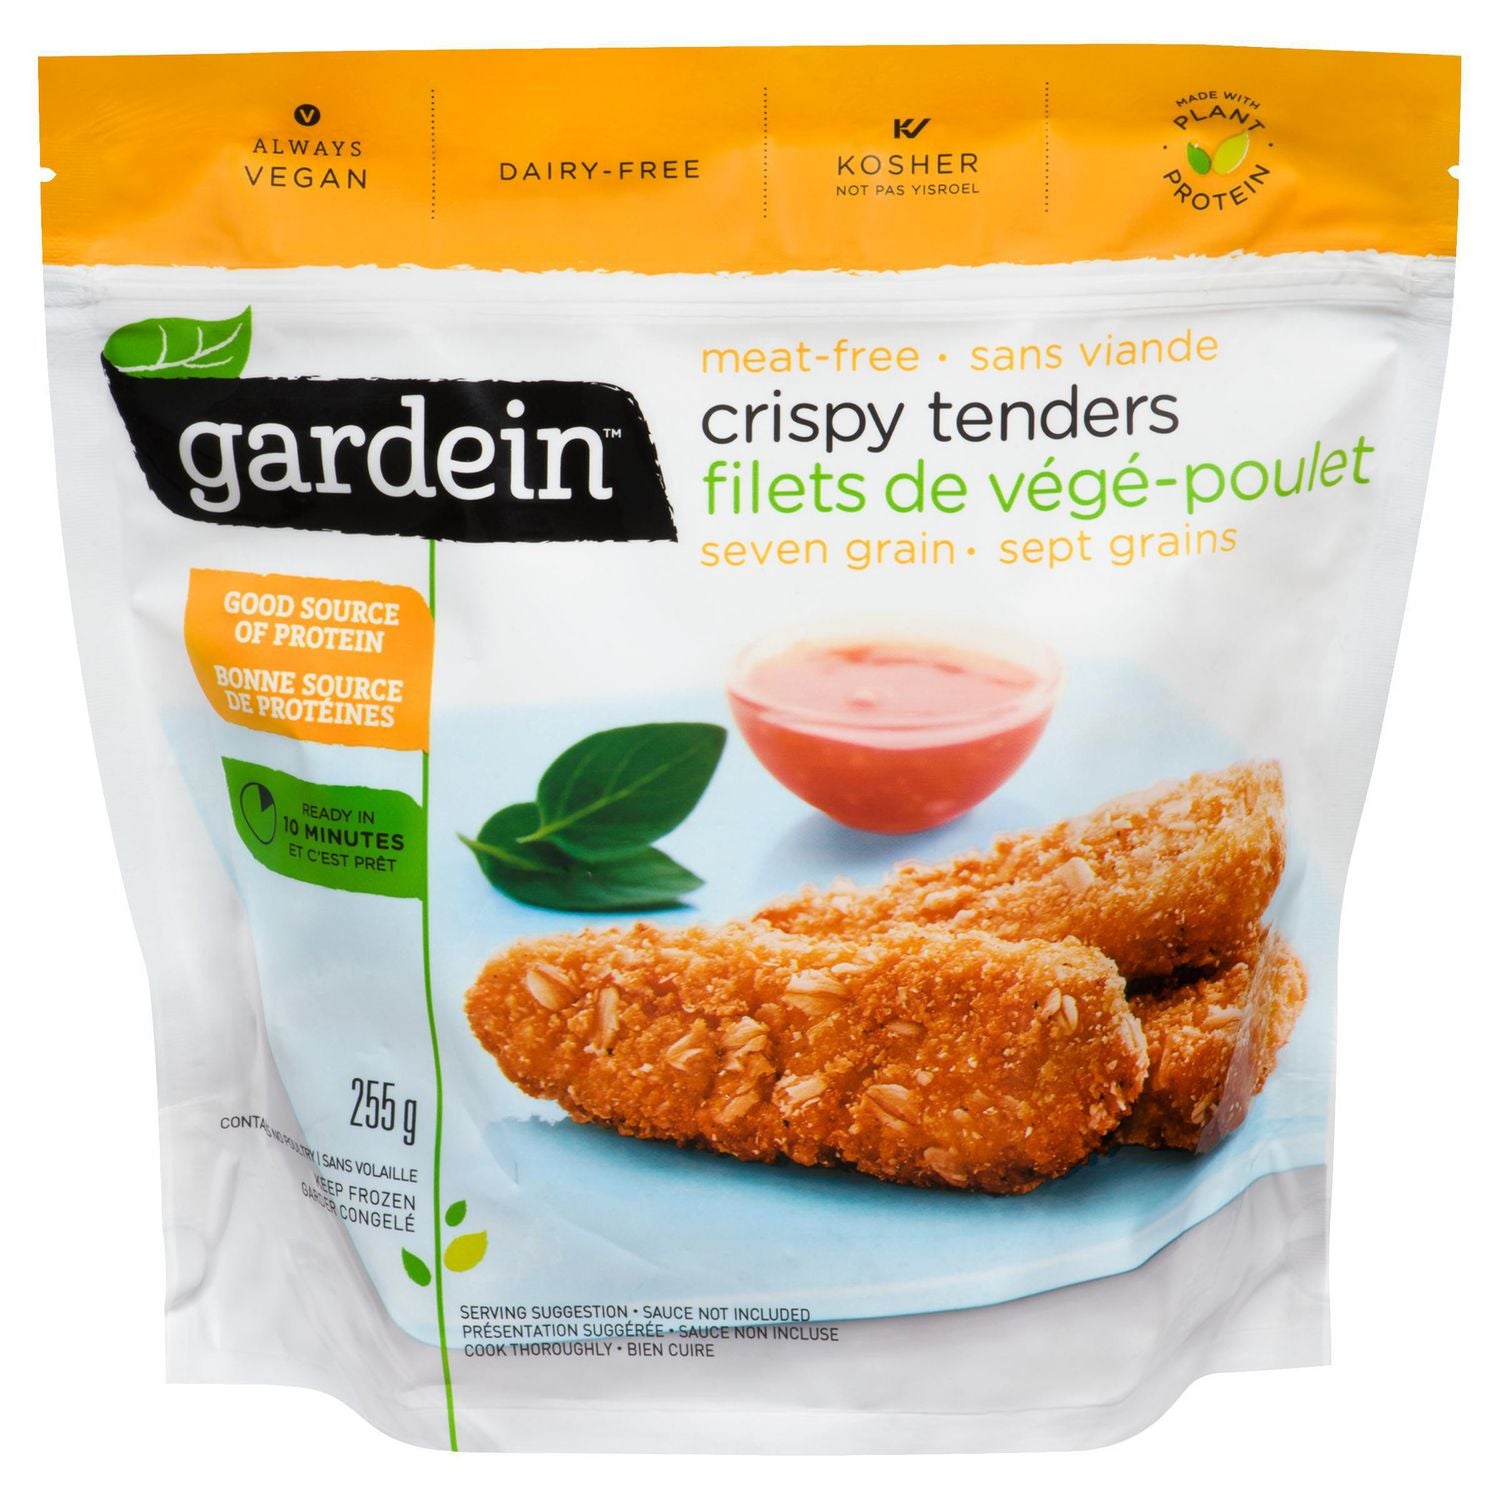 Filets de végé-poulet sept grains (vegan) - gardein